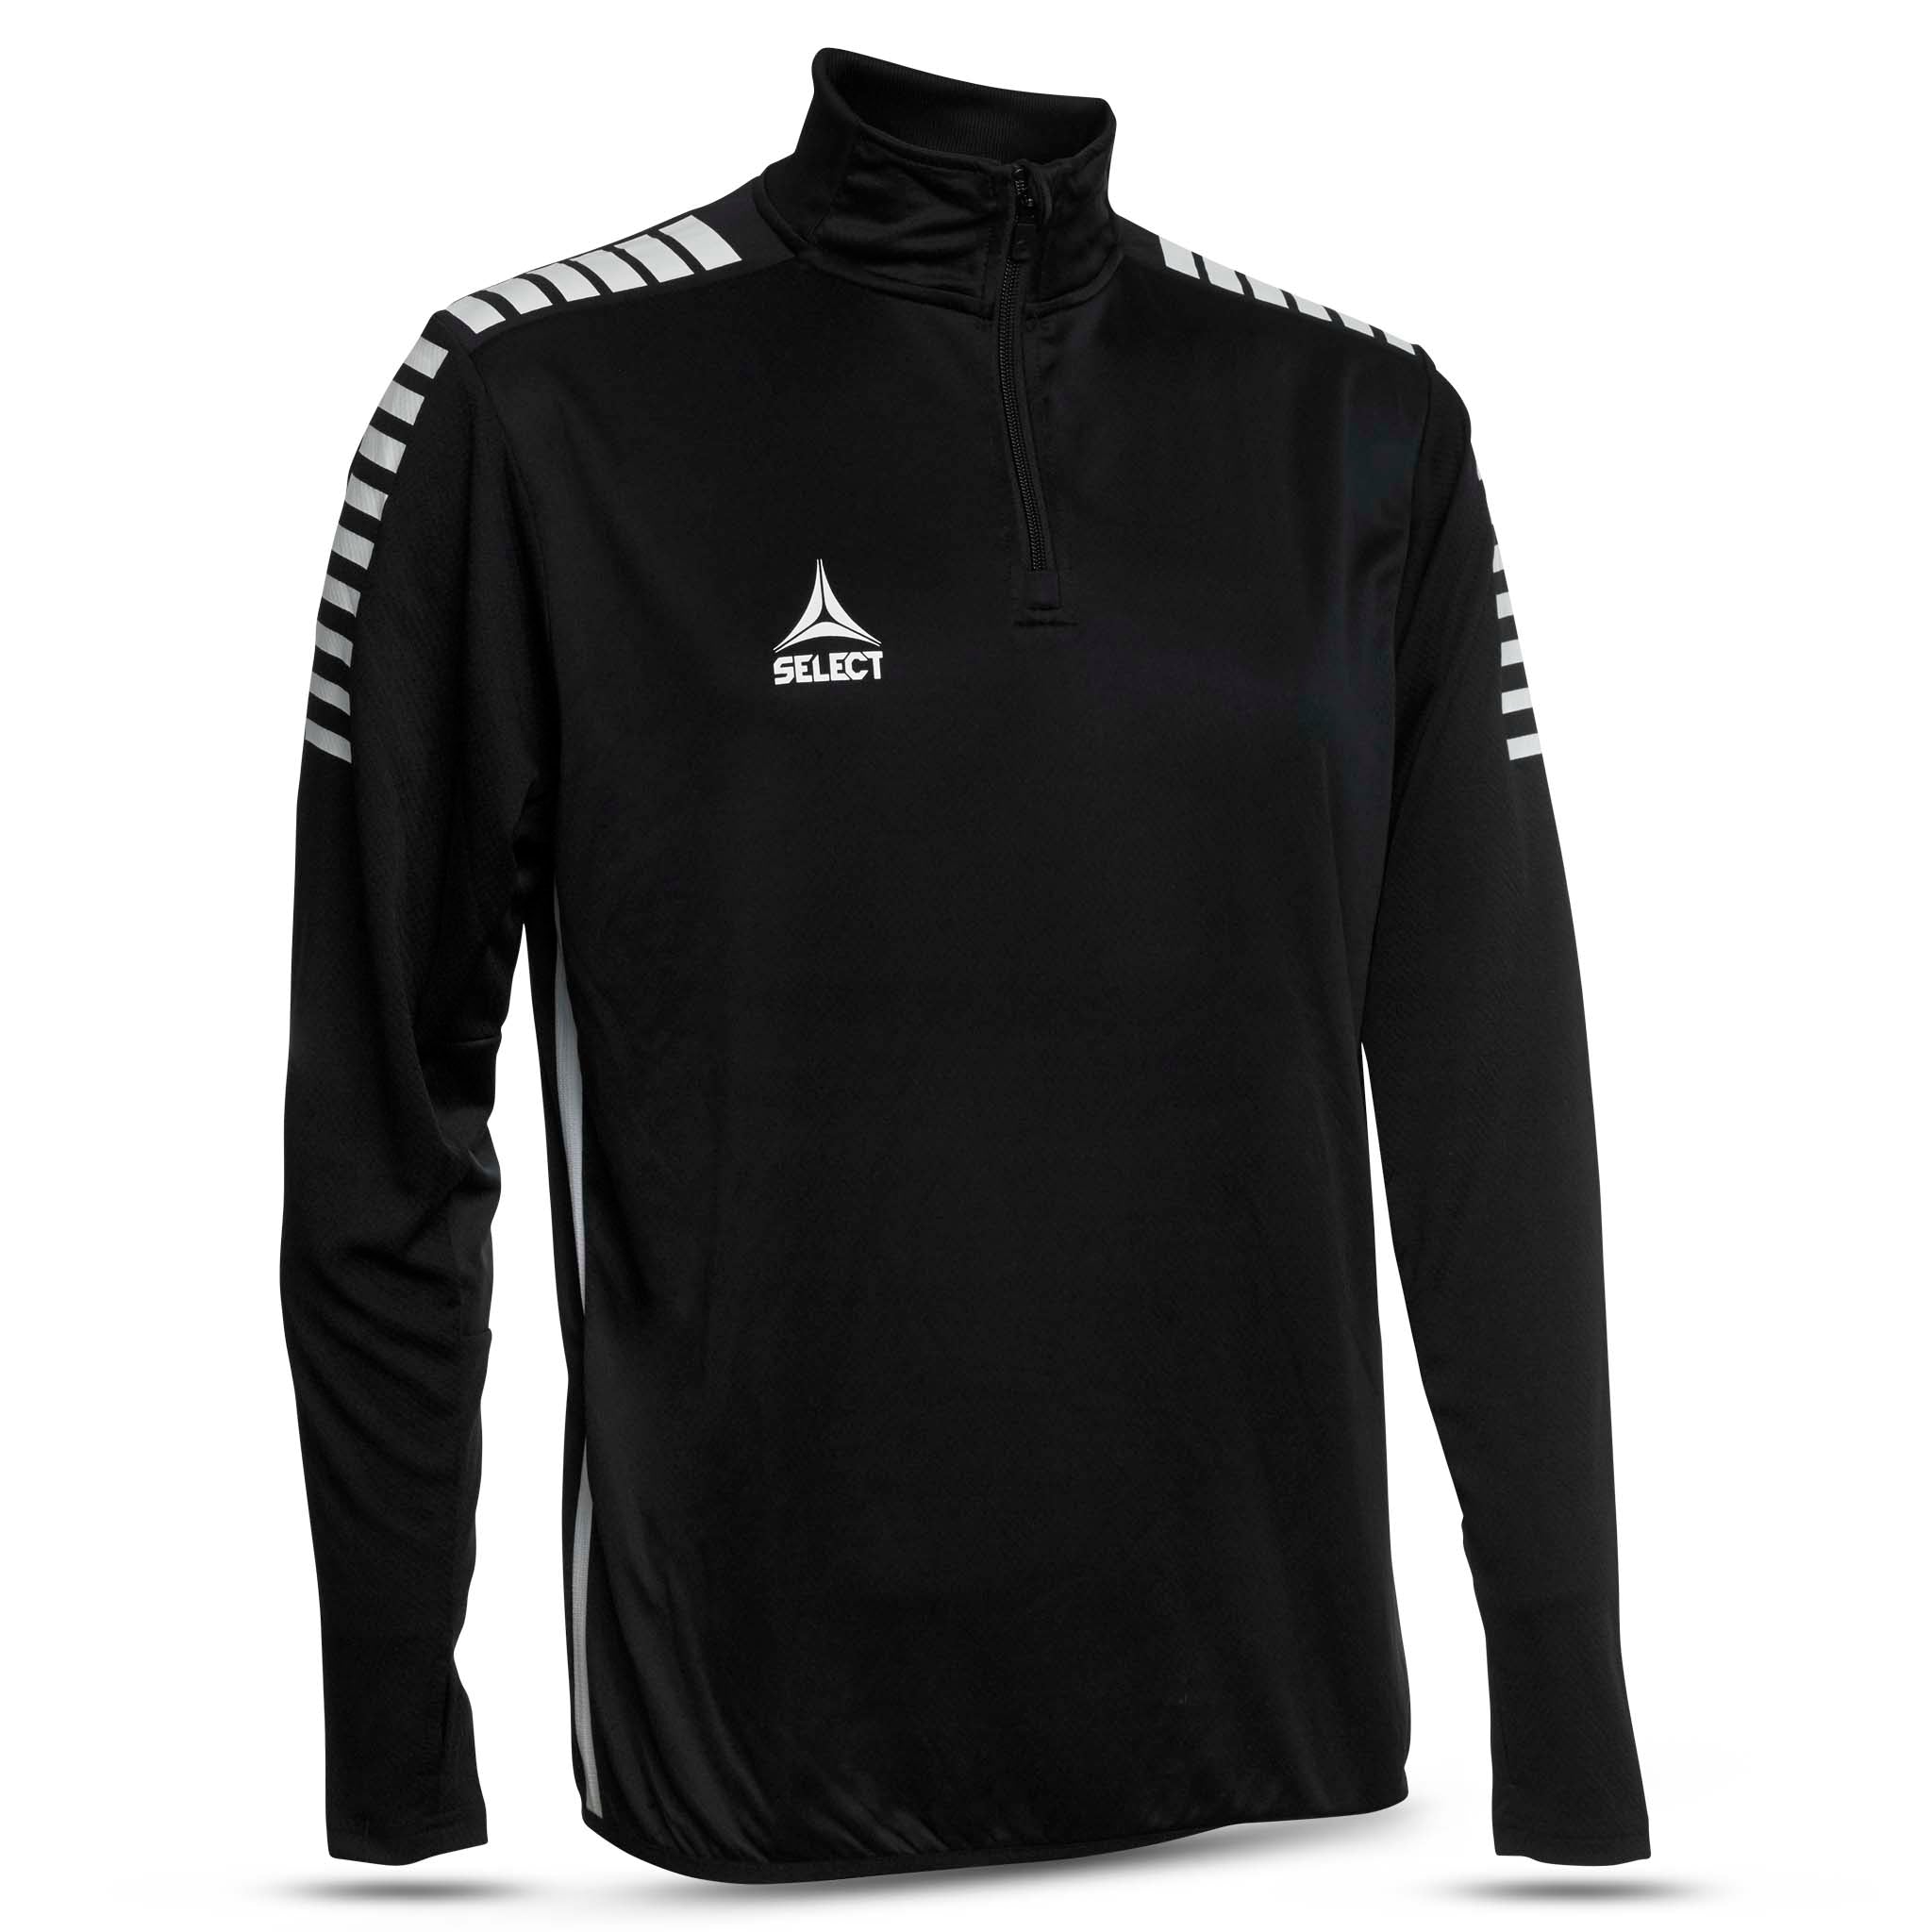 Sweatshirt för träning - Monaco #färg_svart